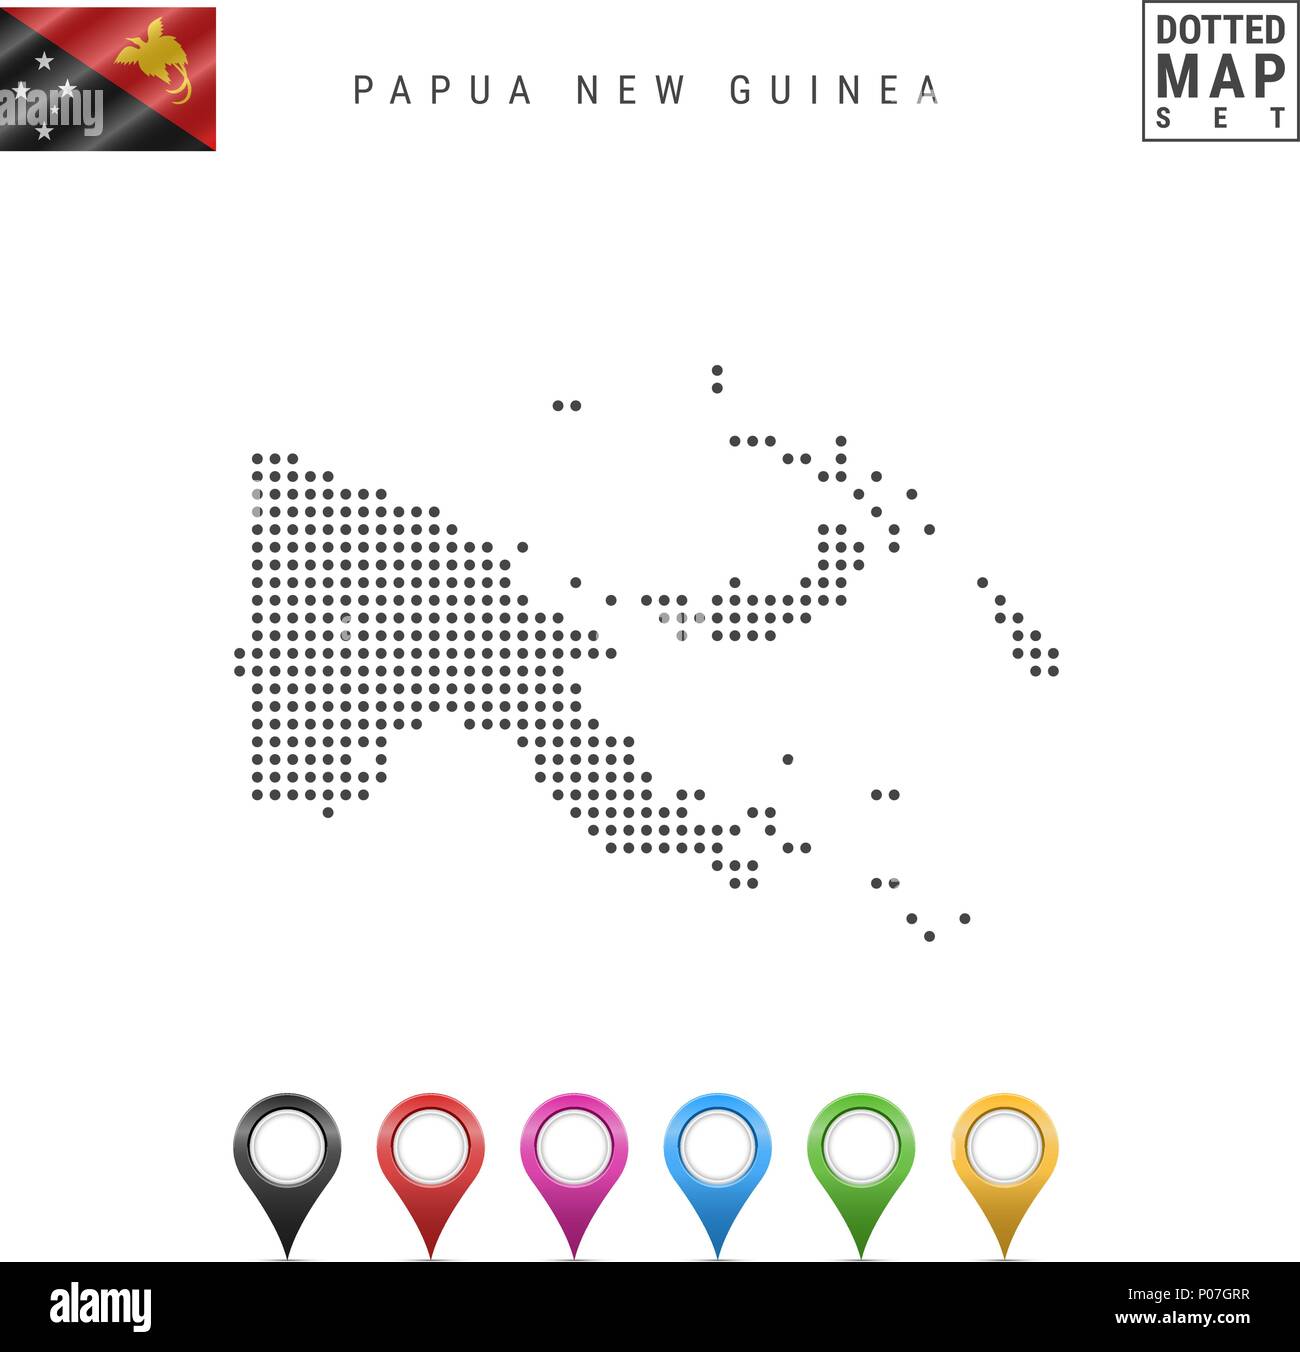 Vettore Mappa punteggiata di Papua Nuova Guinea. Semplice Silhouette di Papua Nuova Guinea. Bandiera della Papua Nuova Guinea. I marcatori mappa impostato Illustrazione Vettoriale